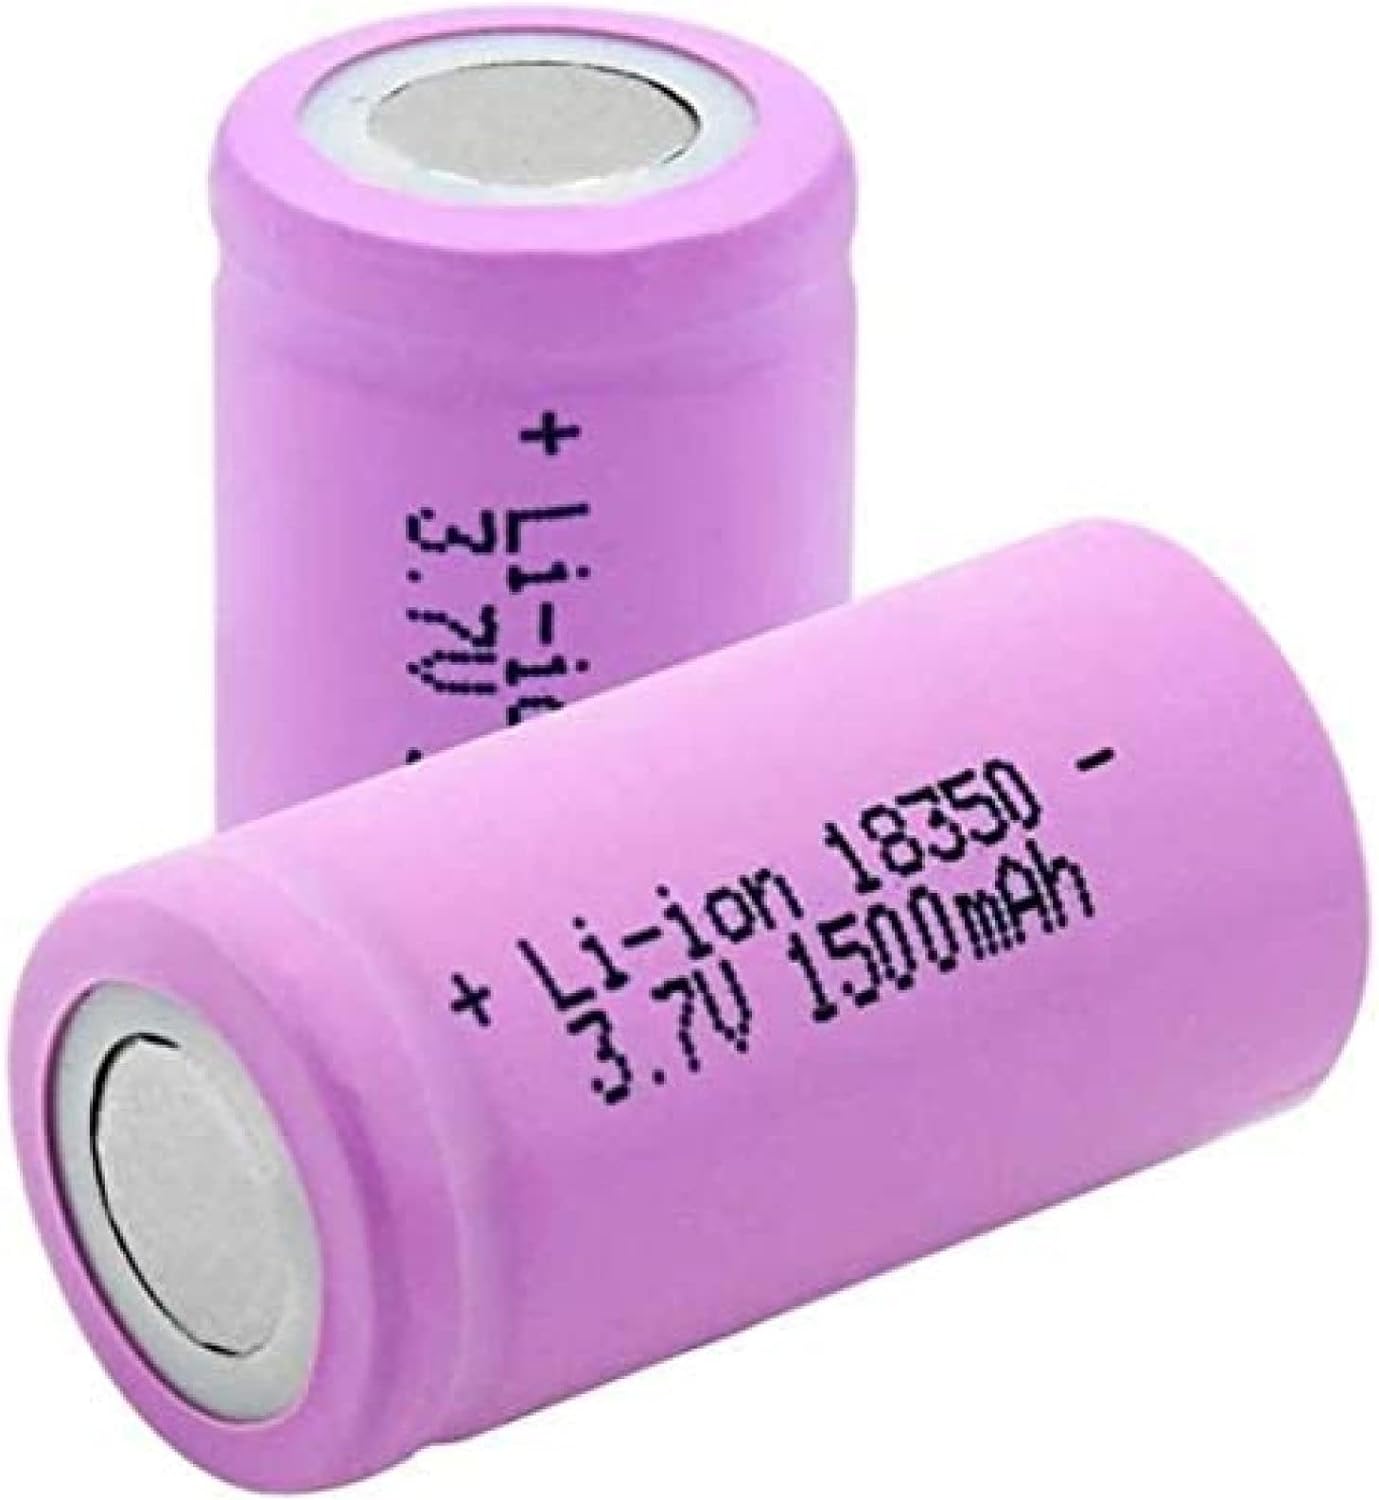 18350リチウムイオン電池 1500mAh 2本セット